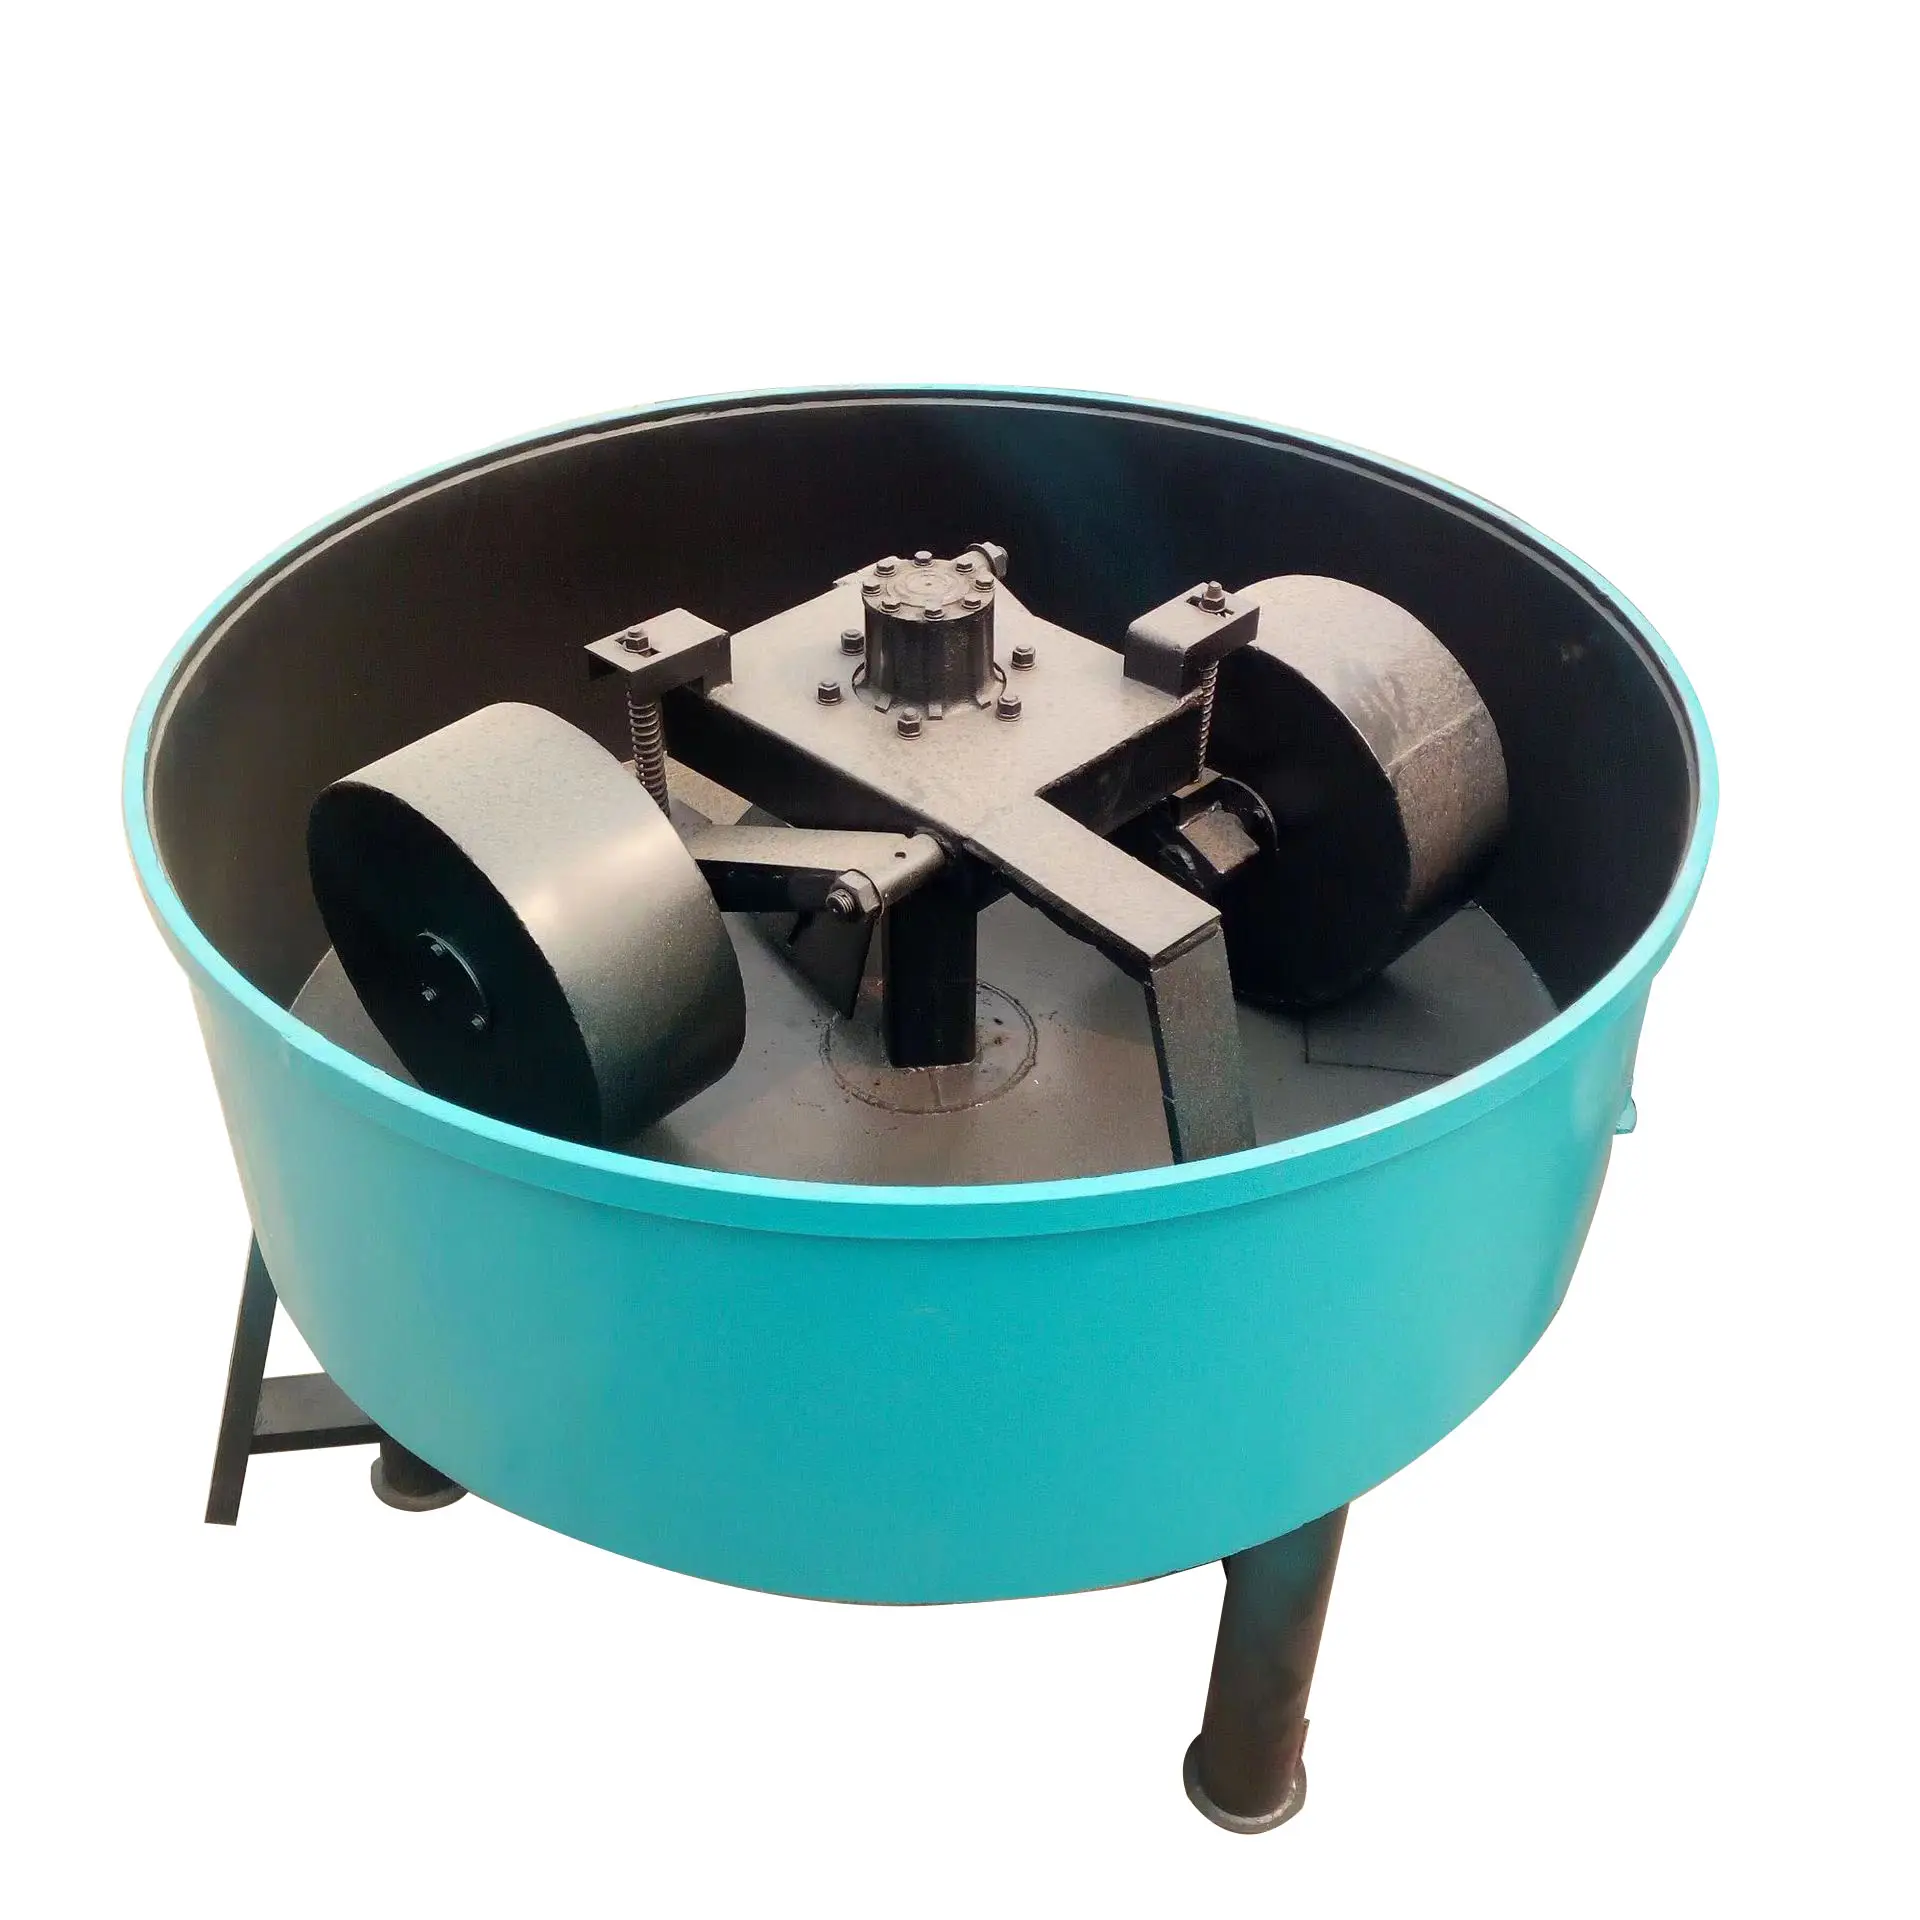 HR 새로운 플랫 마우스 다목적 휠 믹서 수직 건식 및 습식 소재 혼합 휠 밀